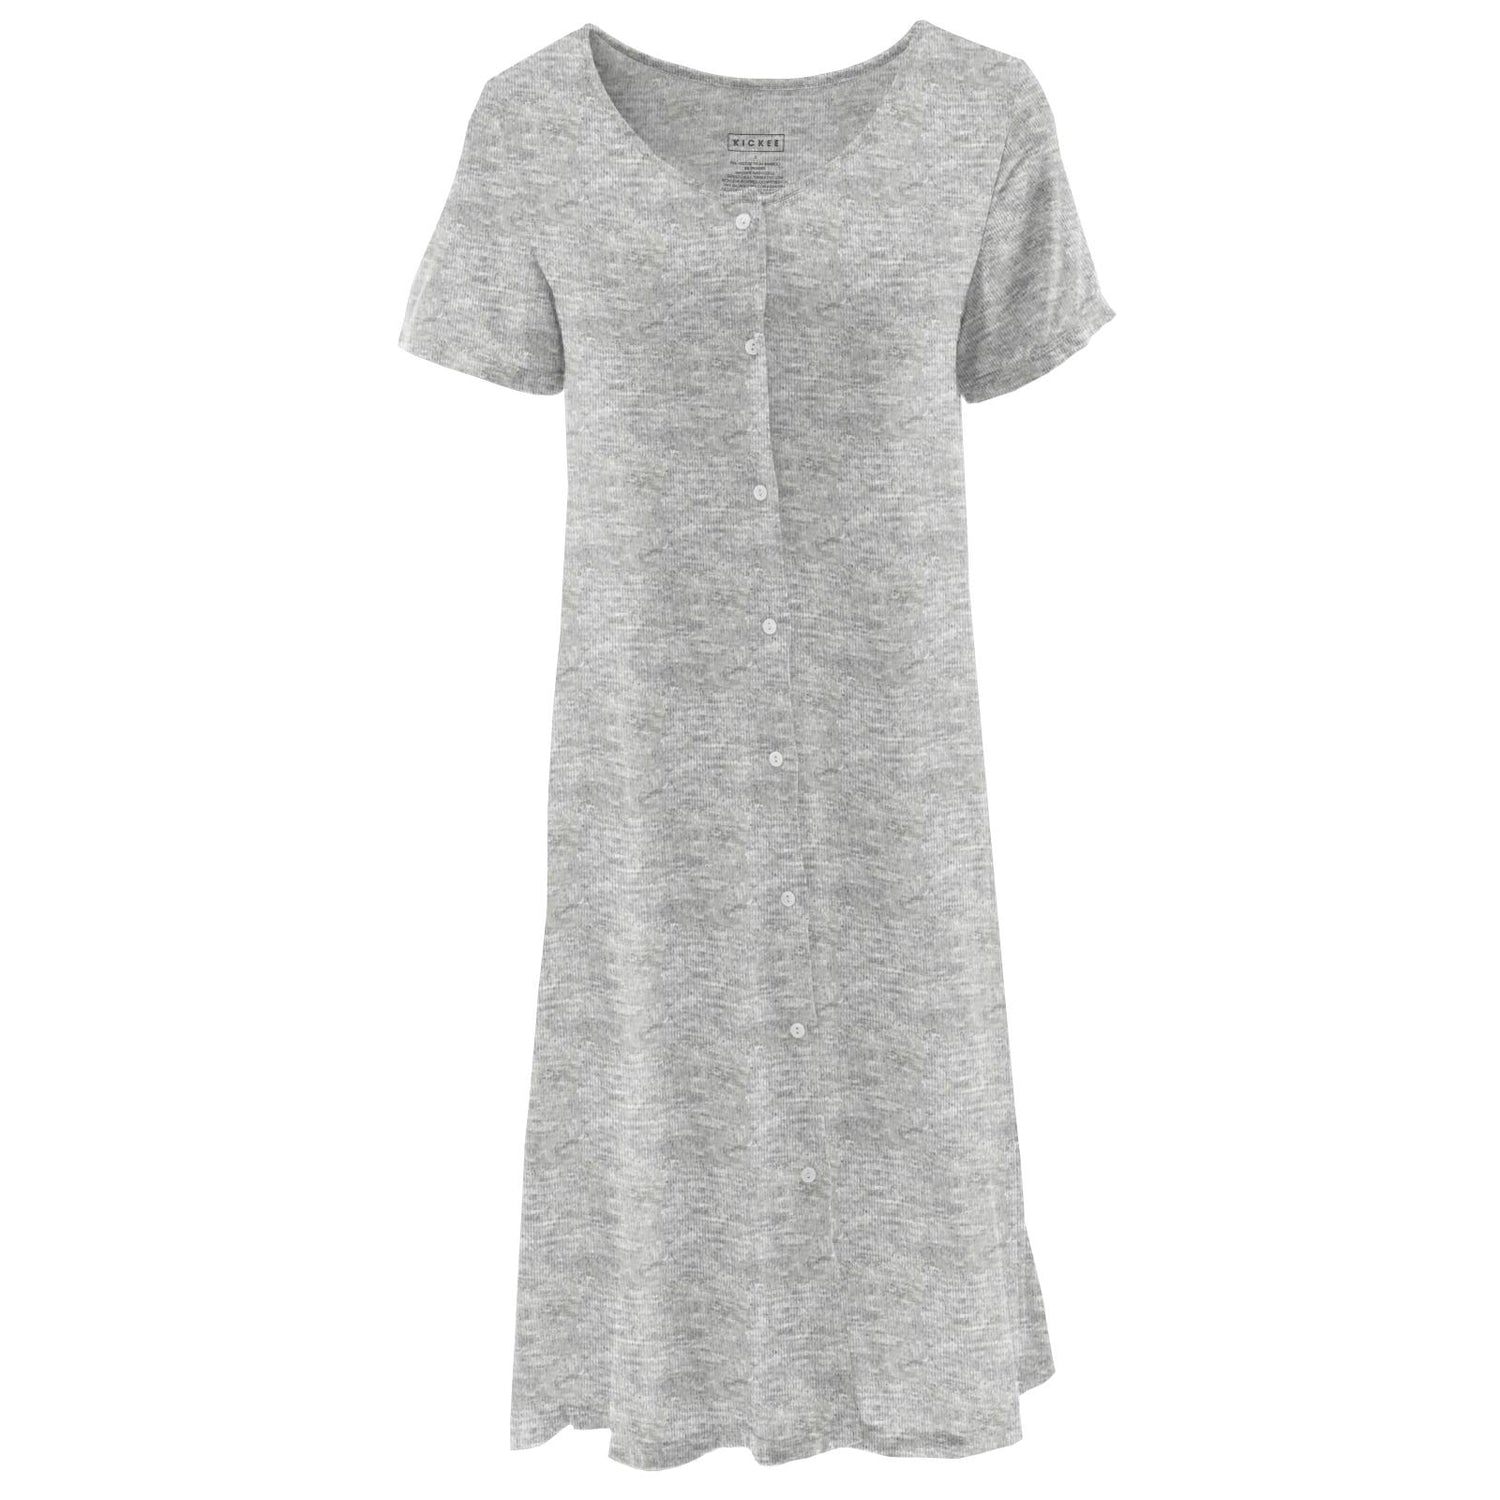 Women's Nursing Nightgown in Heathered Mist